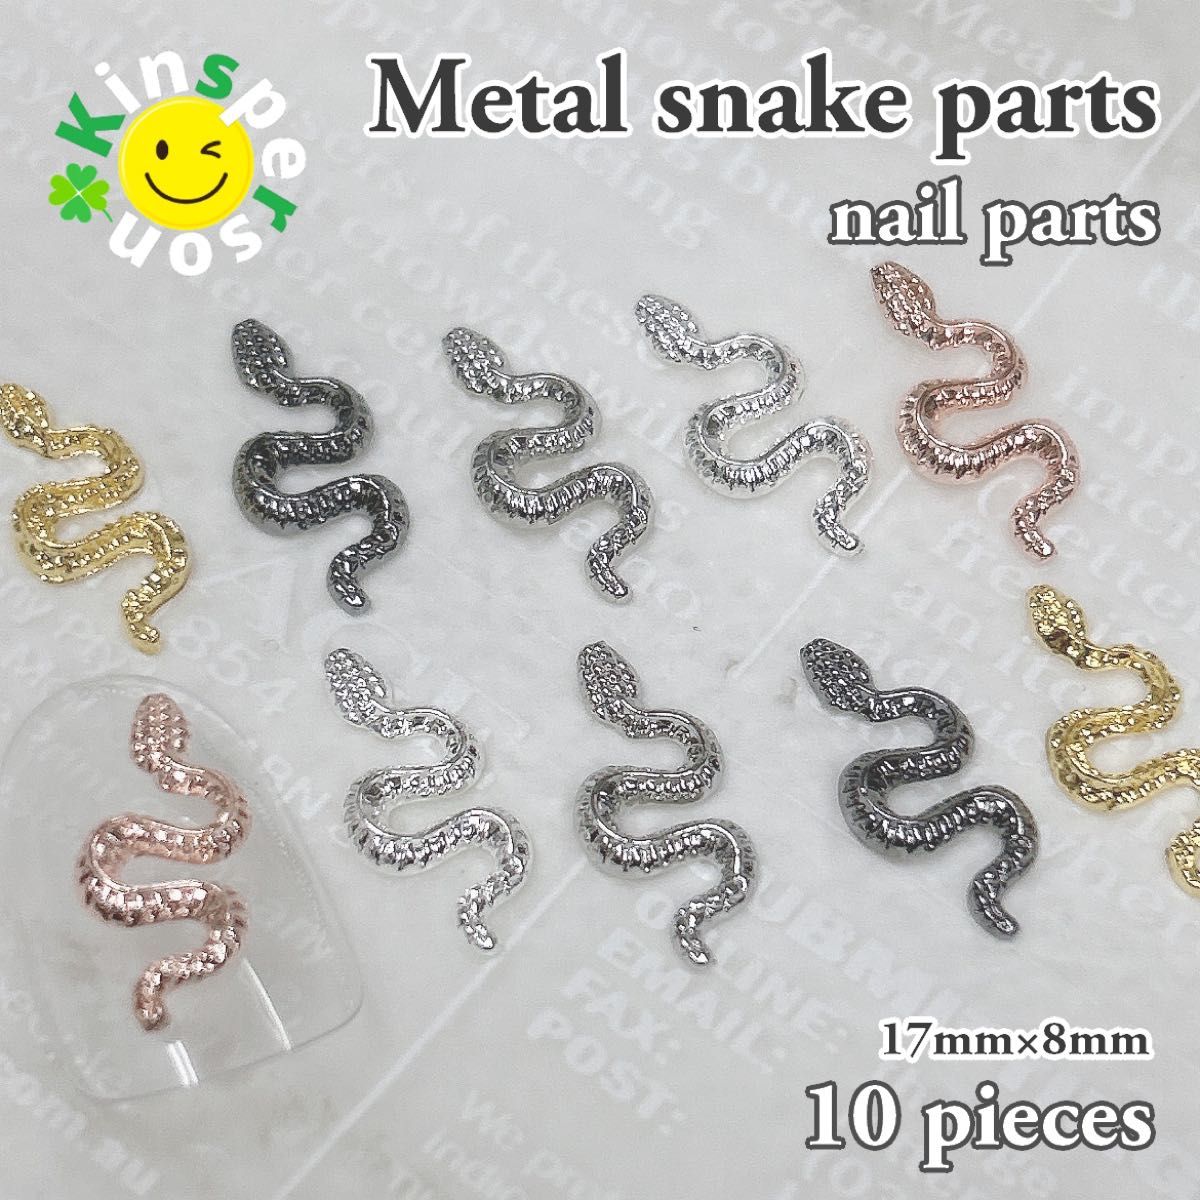 ●新品 メタルSnake（スネーク）ネイルパーツ 5色 10個セット ゴールド/シルバー 金属 デコパーツ デコレーション